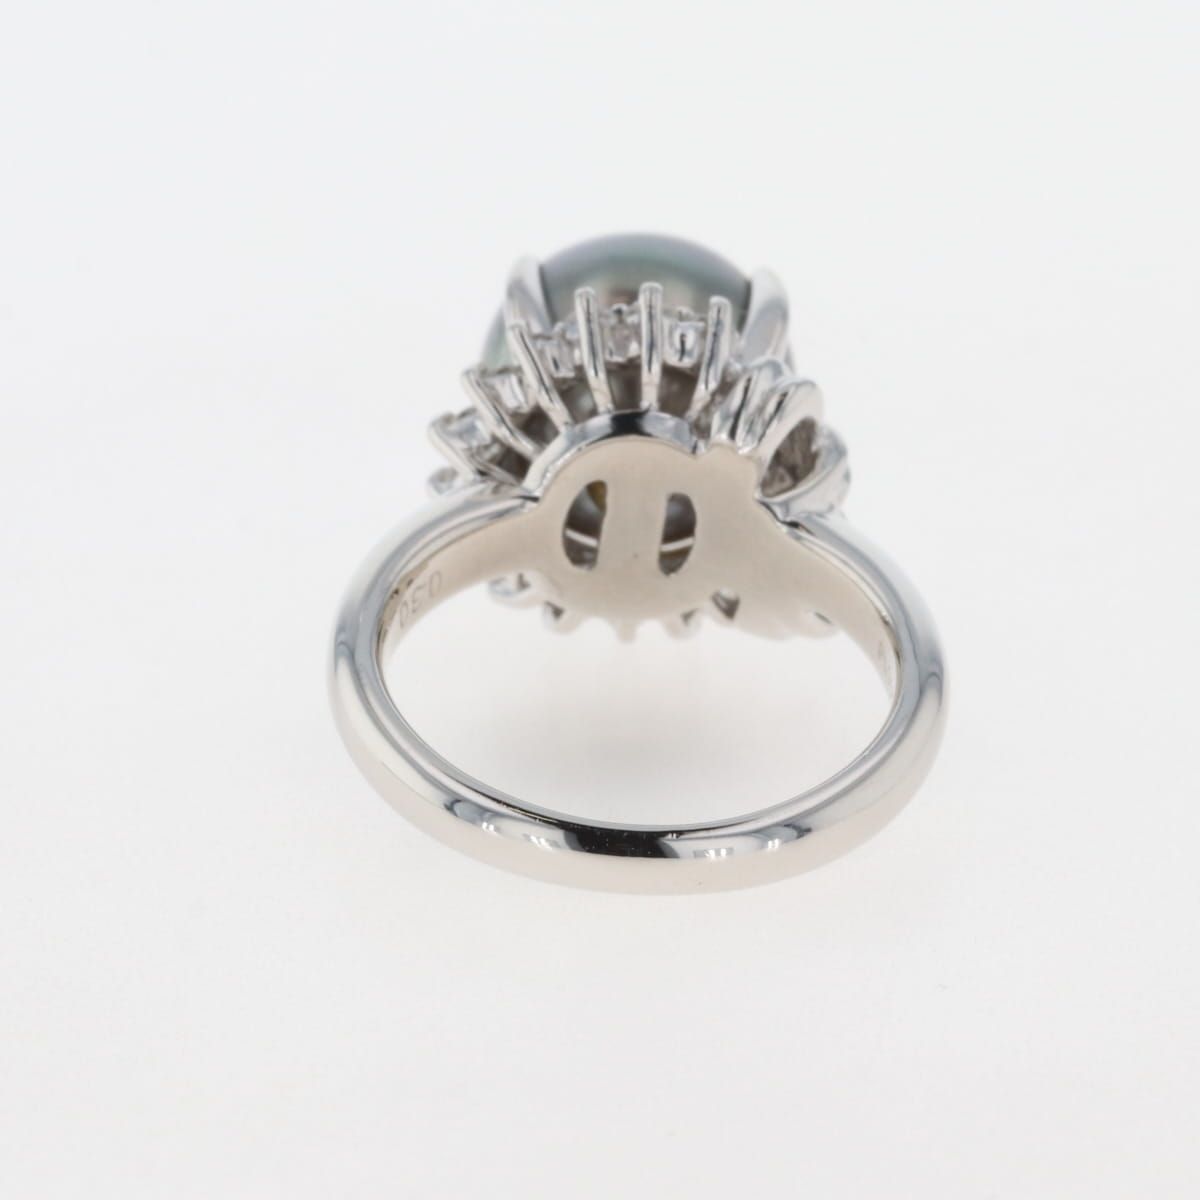 パール デザインリング プラチナ 指輪 真珠 メレダイヤ リング 11号 Pt900 パール ダイヤモンド レディース 【中古】